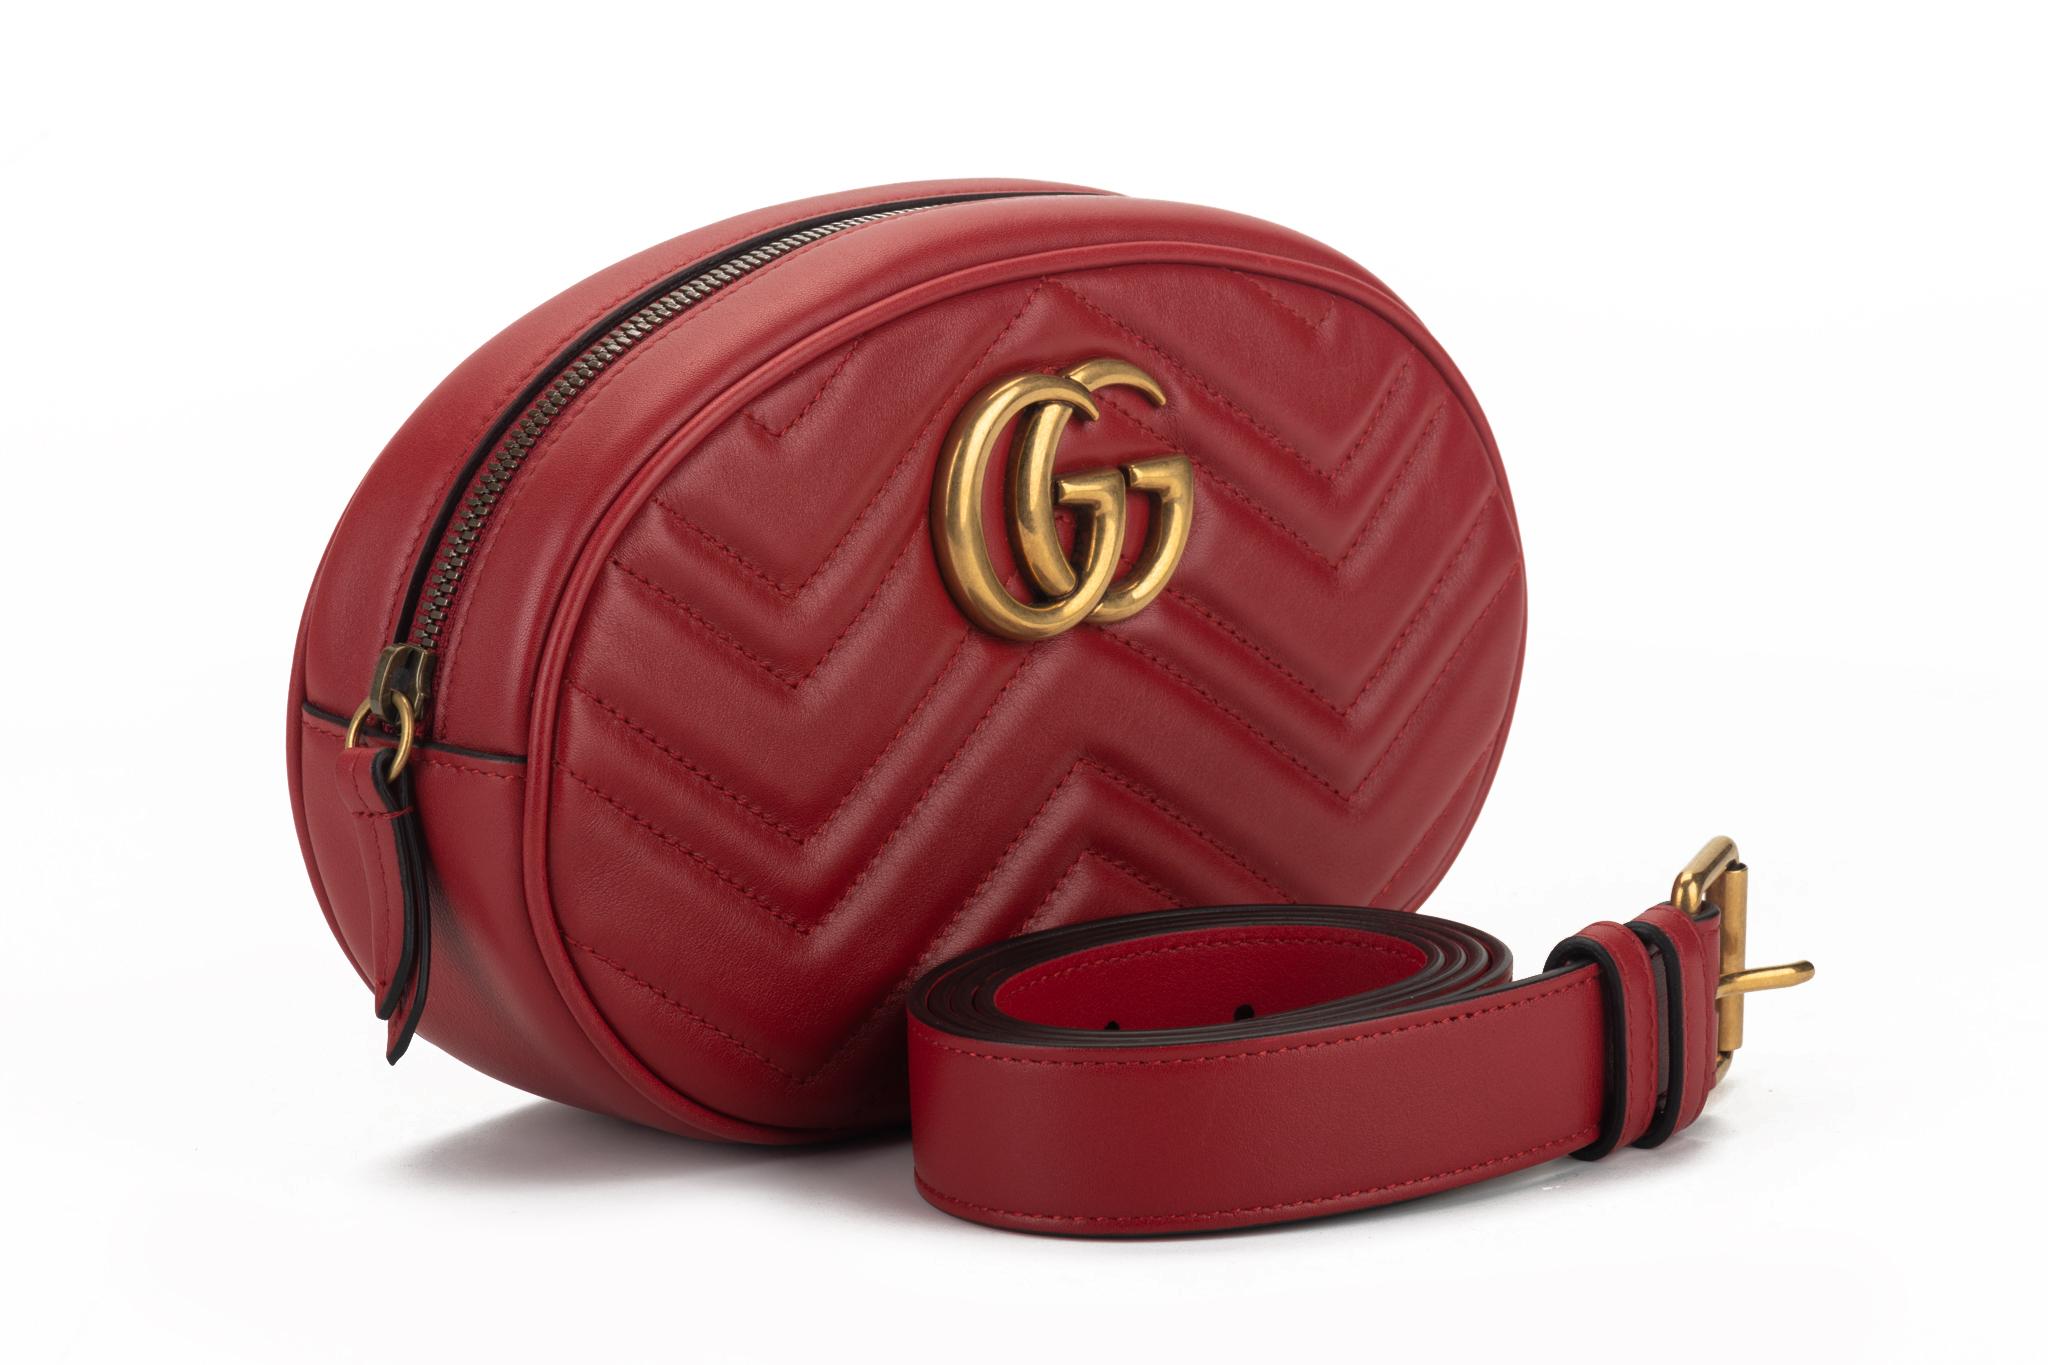 Red Gucci calfskin leather Matelasse GG large belt bag. The adjustable belt measures 43.5